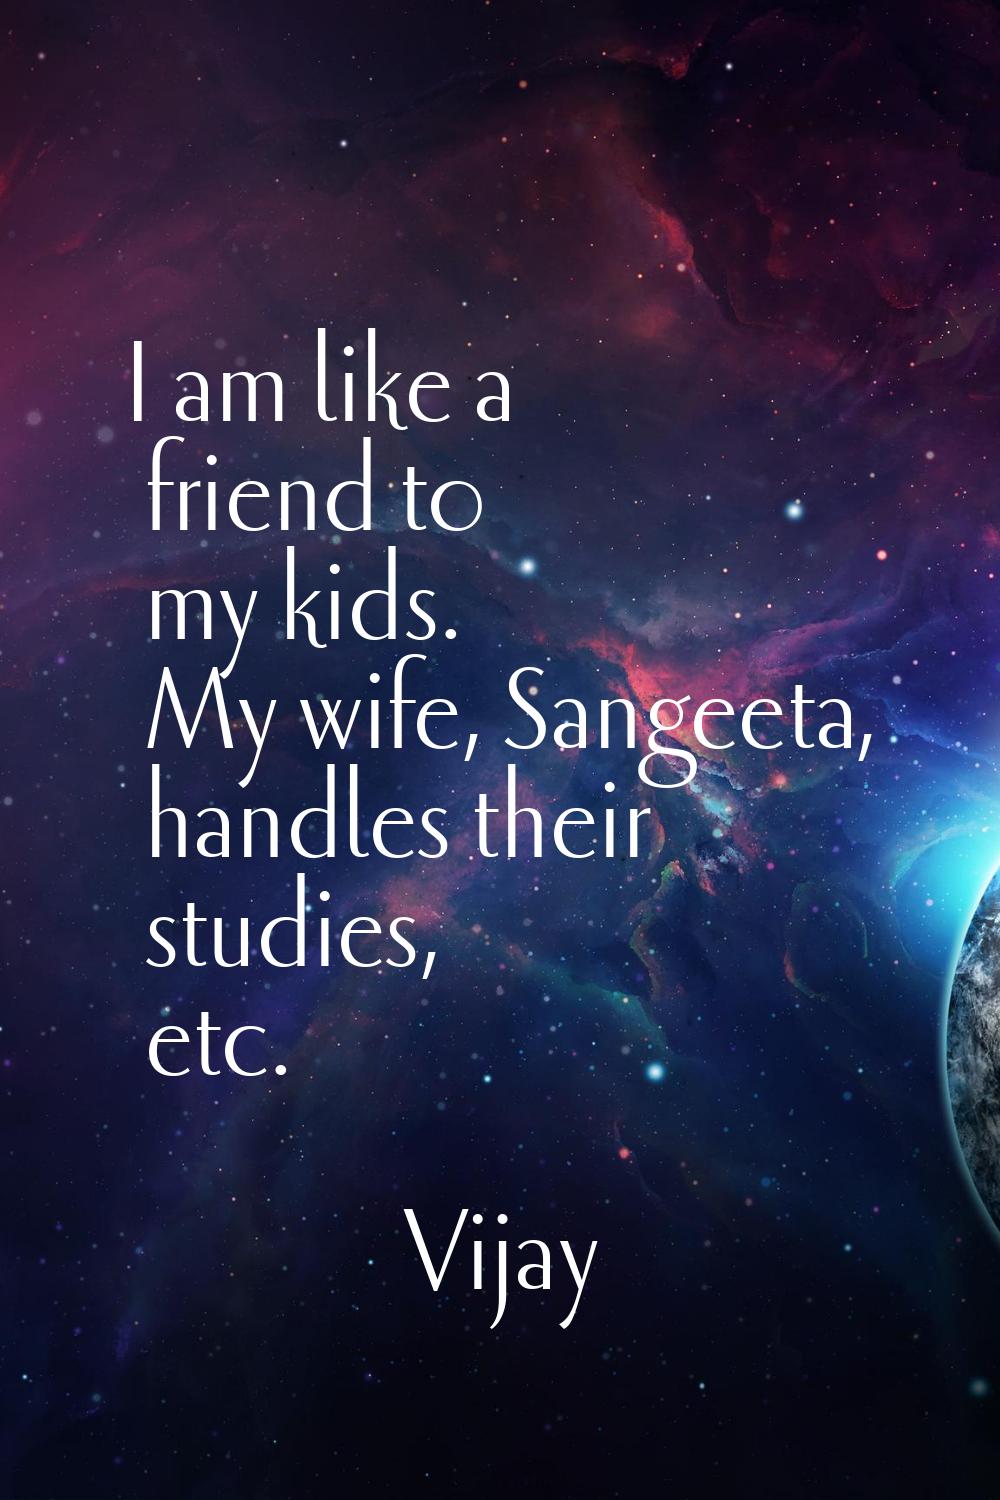 I am like a friend to my kids. My wife, Sangeeta, handles their studies, etc.